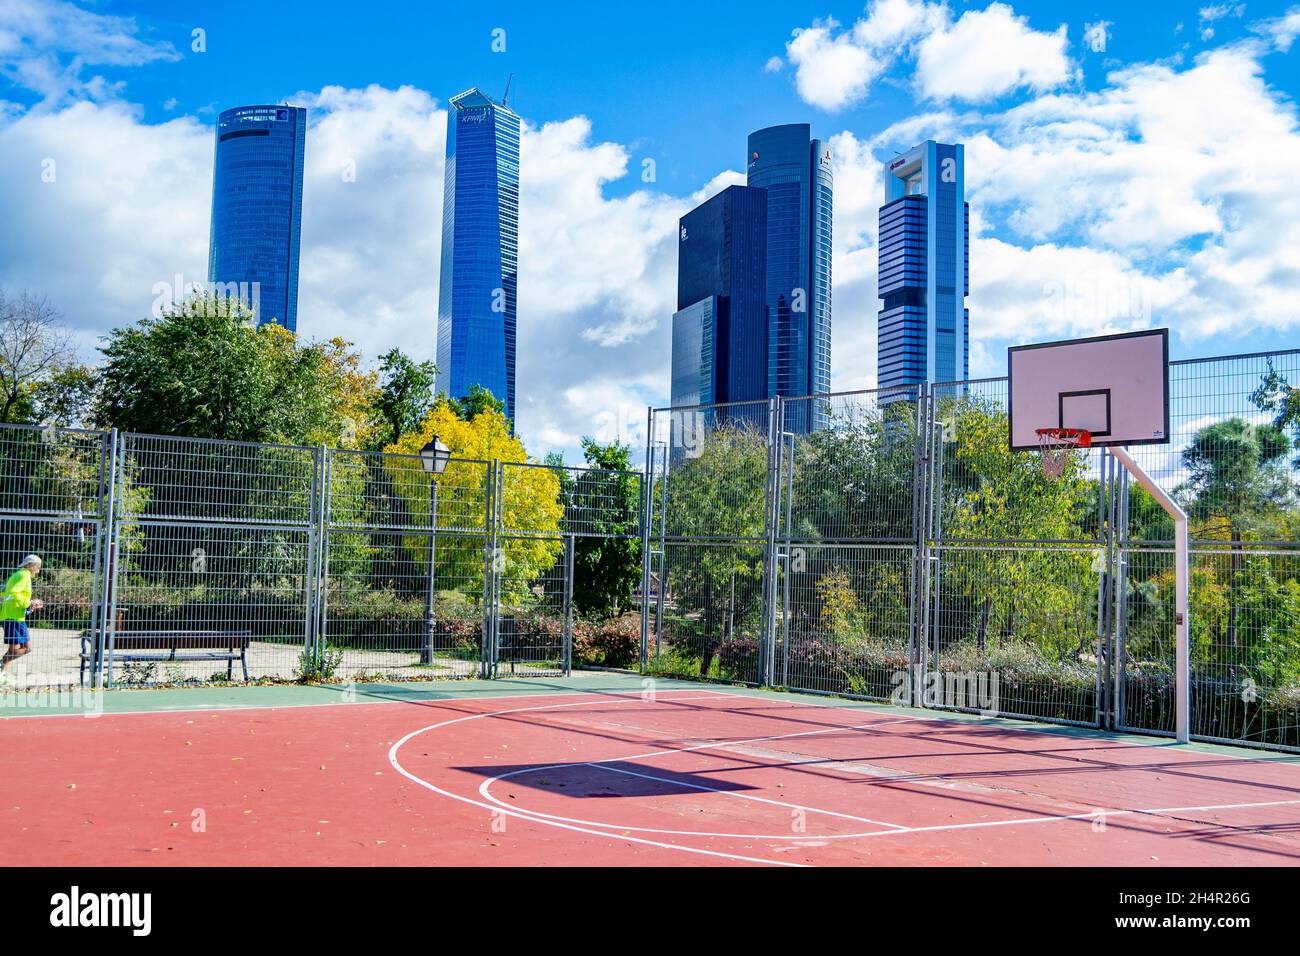 Basketballplatz mit den 5 Wolkenkratzern der Stadt Madrid in Spanien. Europa. Horizontale Fotografie. Stockfoto